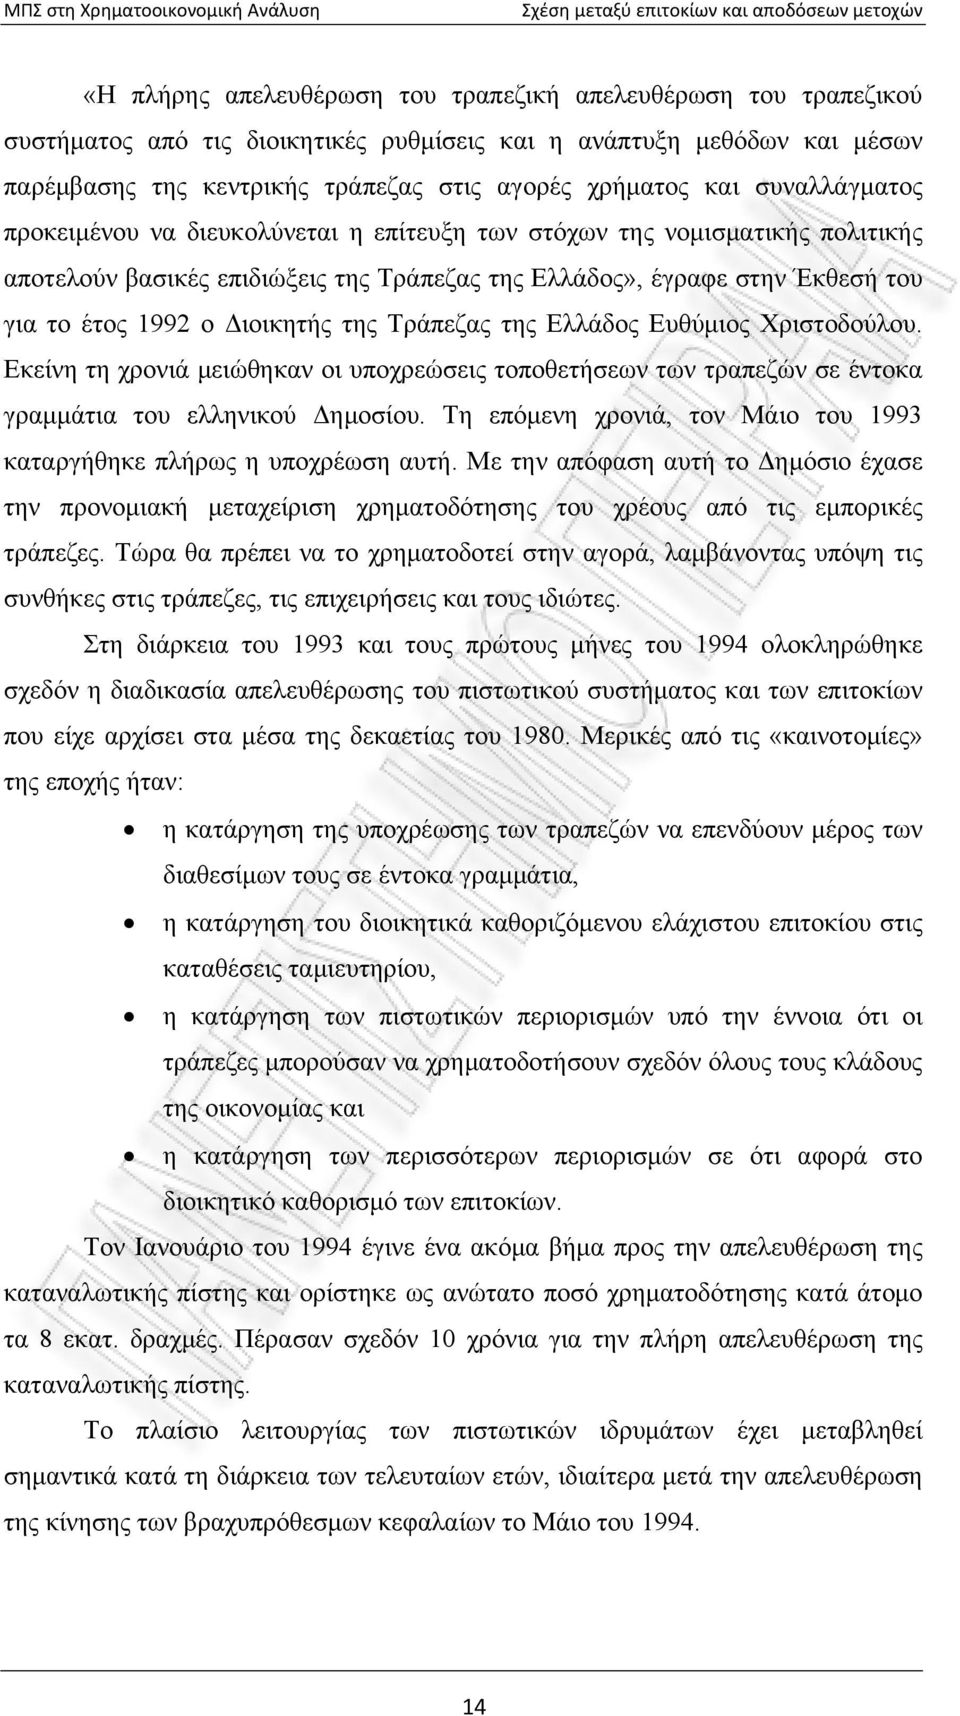 της Τράπεζας της Ελλάδος Ευθύμιος Χριστοδούλου. Εκείνη τη χρονιά μειώθηκαν οι υποχρεώσεις τοποθετήσεων των τραπεζών σε έντοκα γραμμάτια του ελληνικού Δημοσίου.